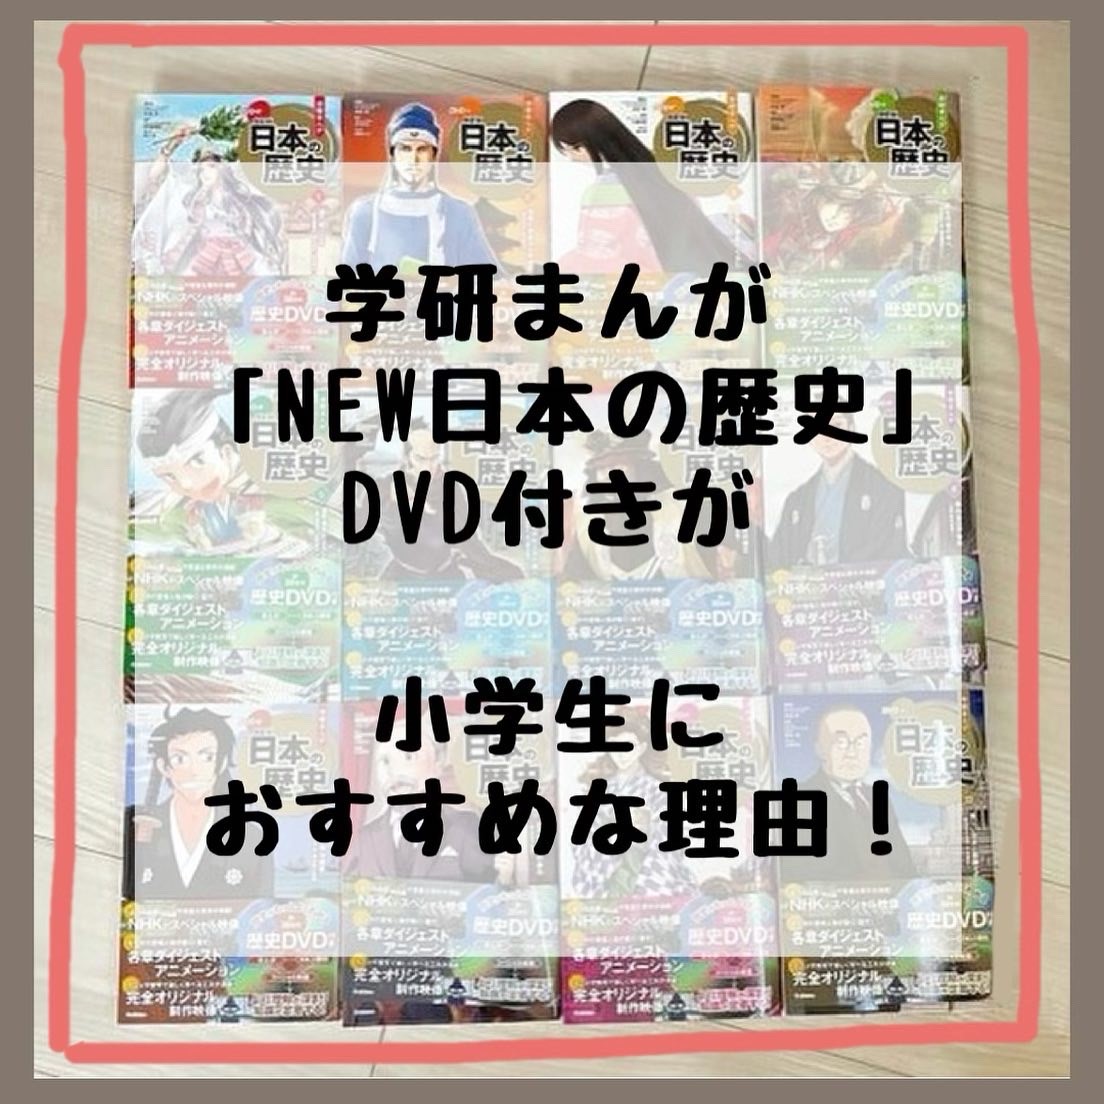 レビュー 学研まんがnew日本の歴史が小学生におすすめ オールカラーでさらに豪華dvd付き Kirin のブログ